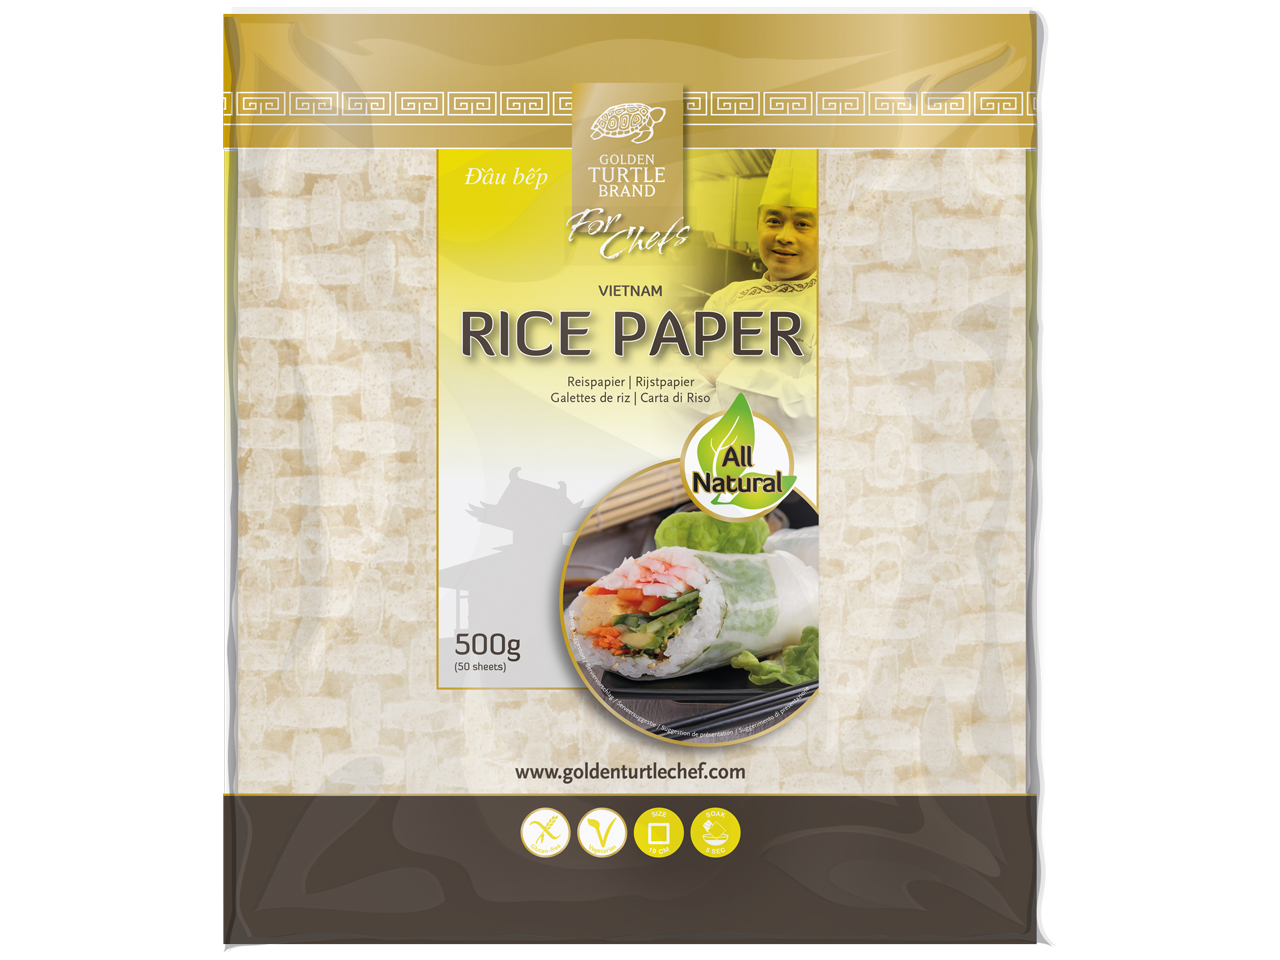 Cos'è la carta di riso?